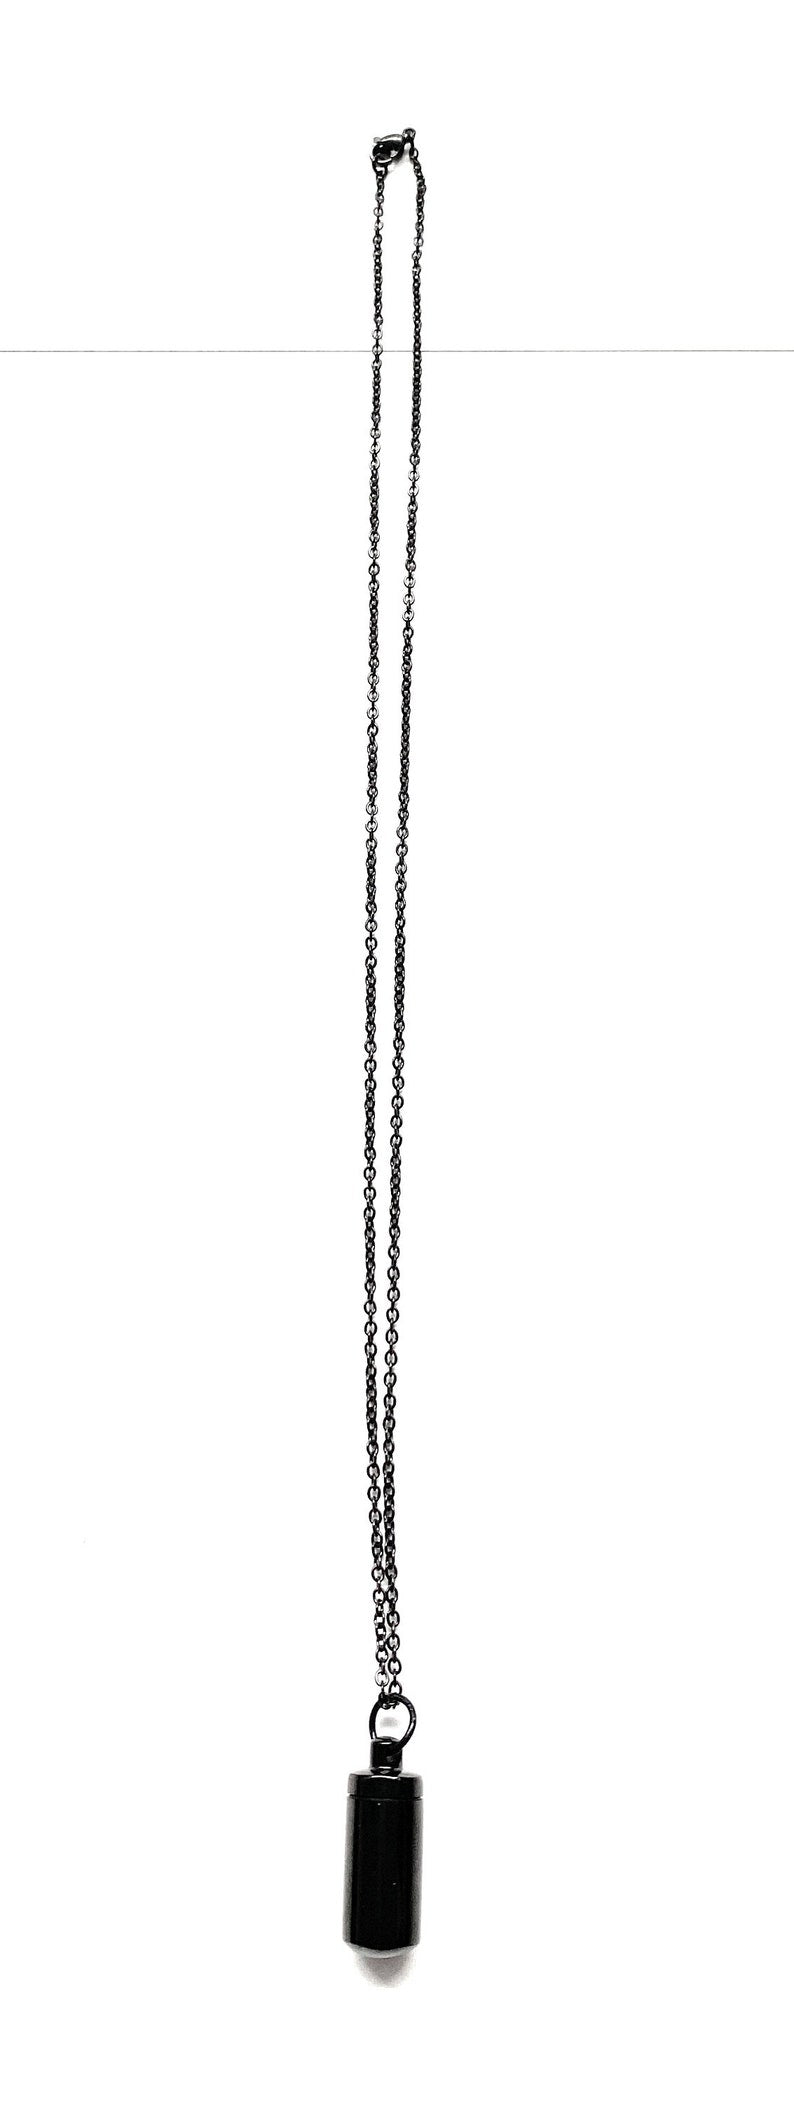 Halskette mit befüllbarer Kapsel in Schwarz (ca. 30cm)  Kette Zylinder Collier Anhänger zum schrauben aus Edelstahl